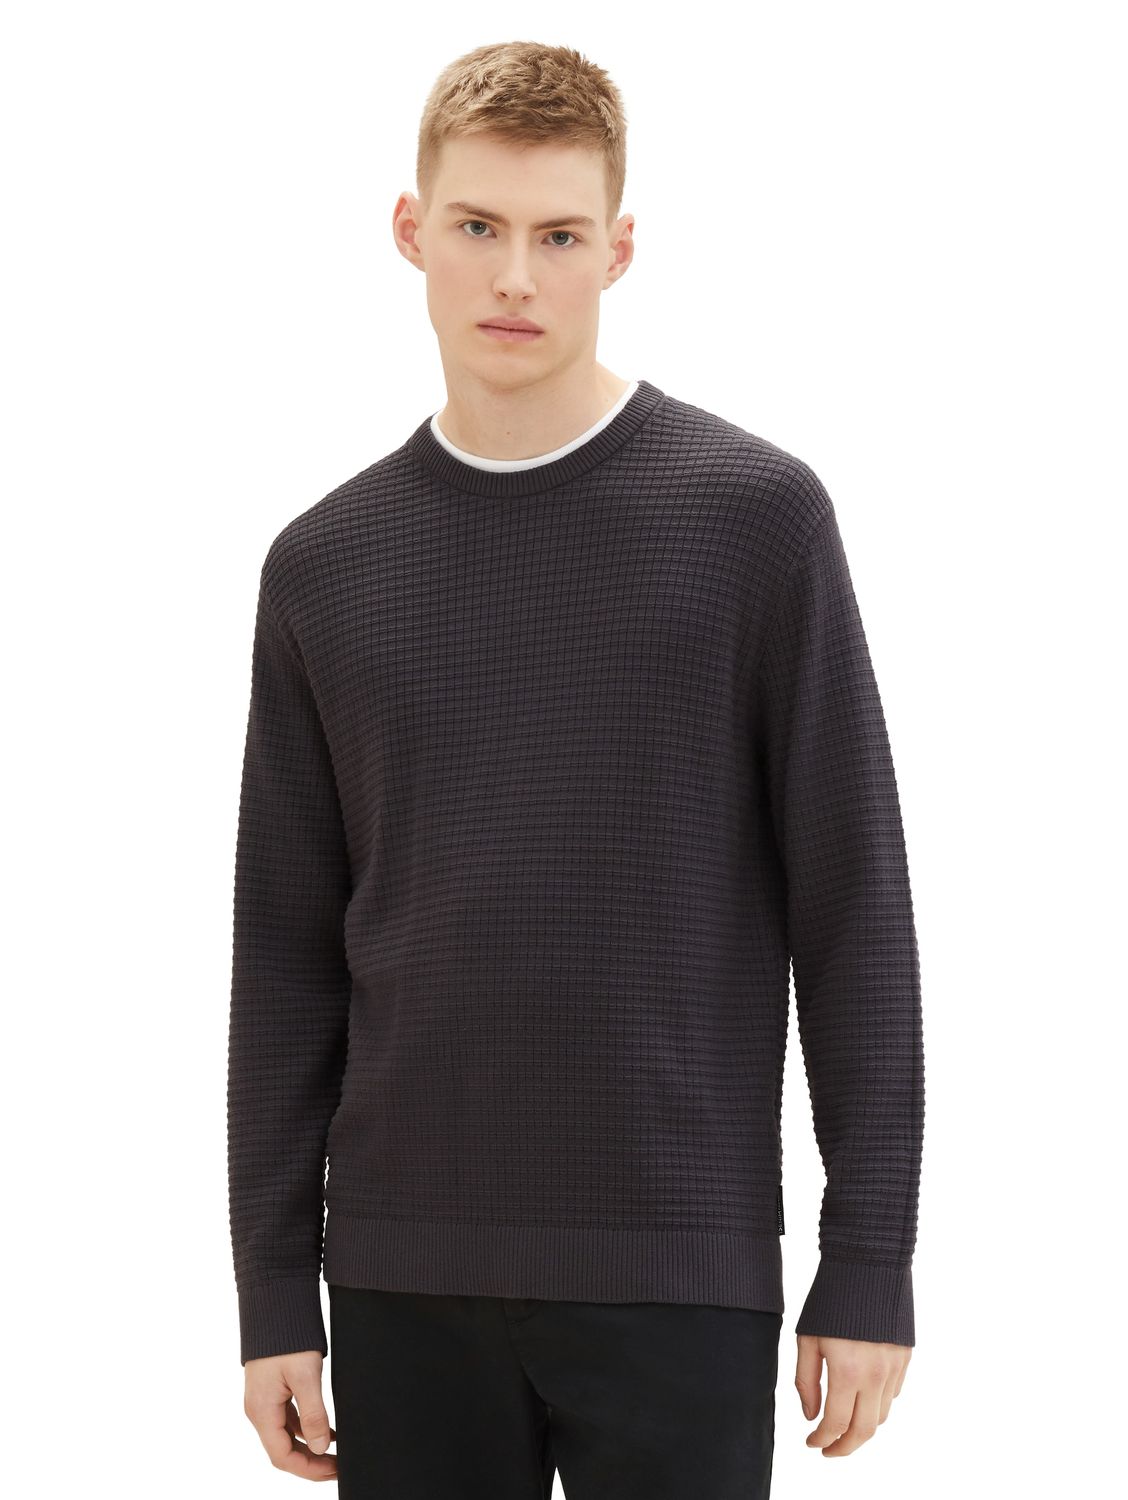 Пуловер TOM TAILOR Denim STRUCTURED DOUBLELAYER, серый пуловер tom tailor denim structured doublelayer бежевый